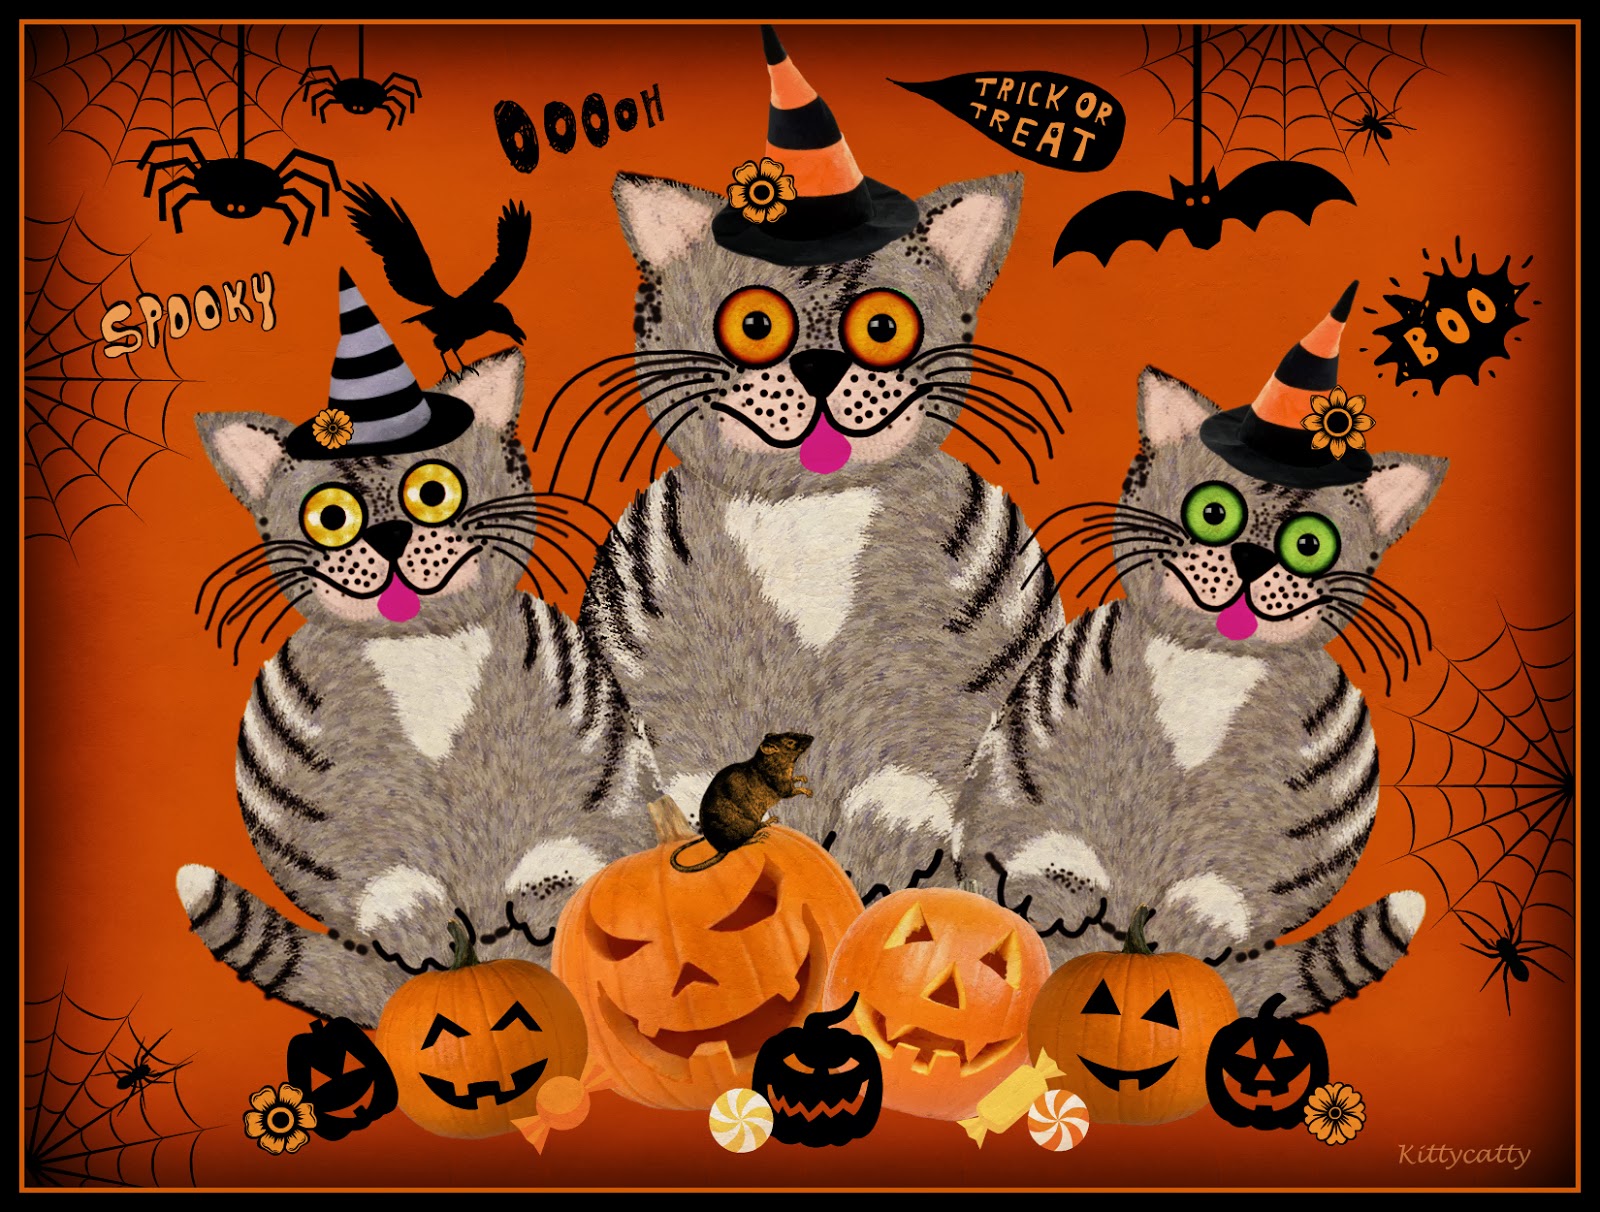 Desktop Wallpaper Halloween Background